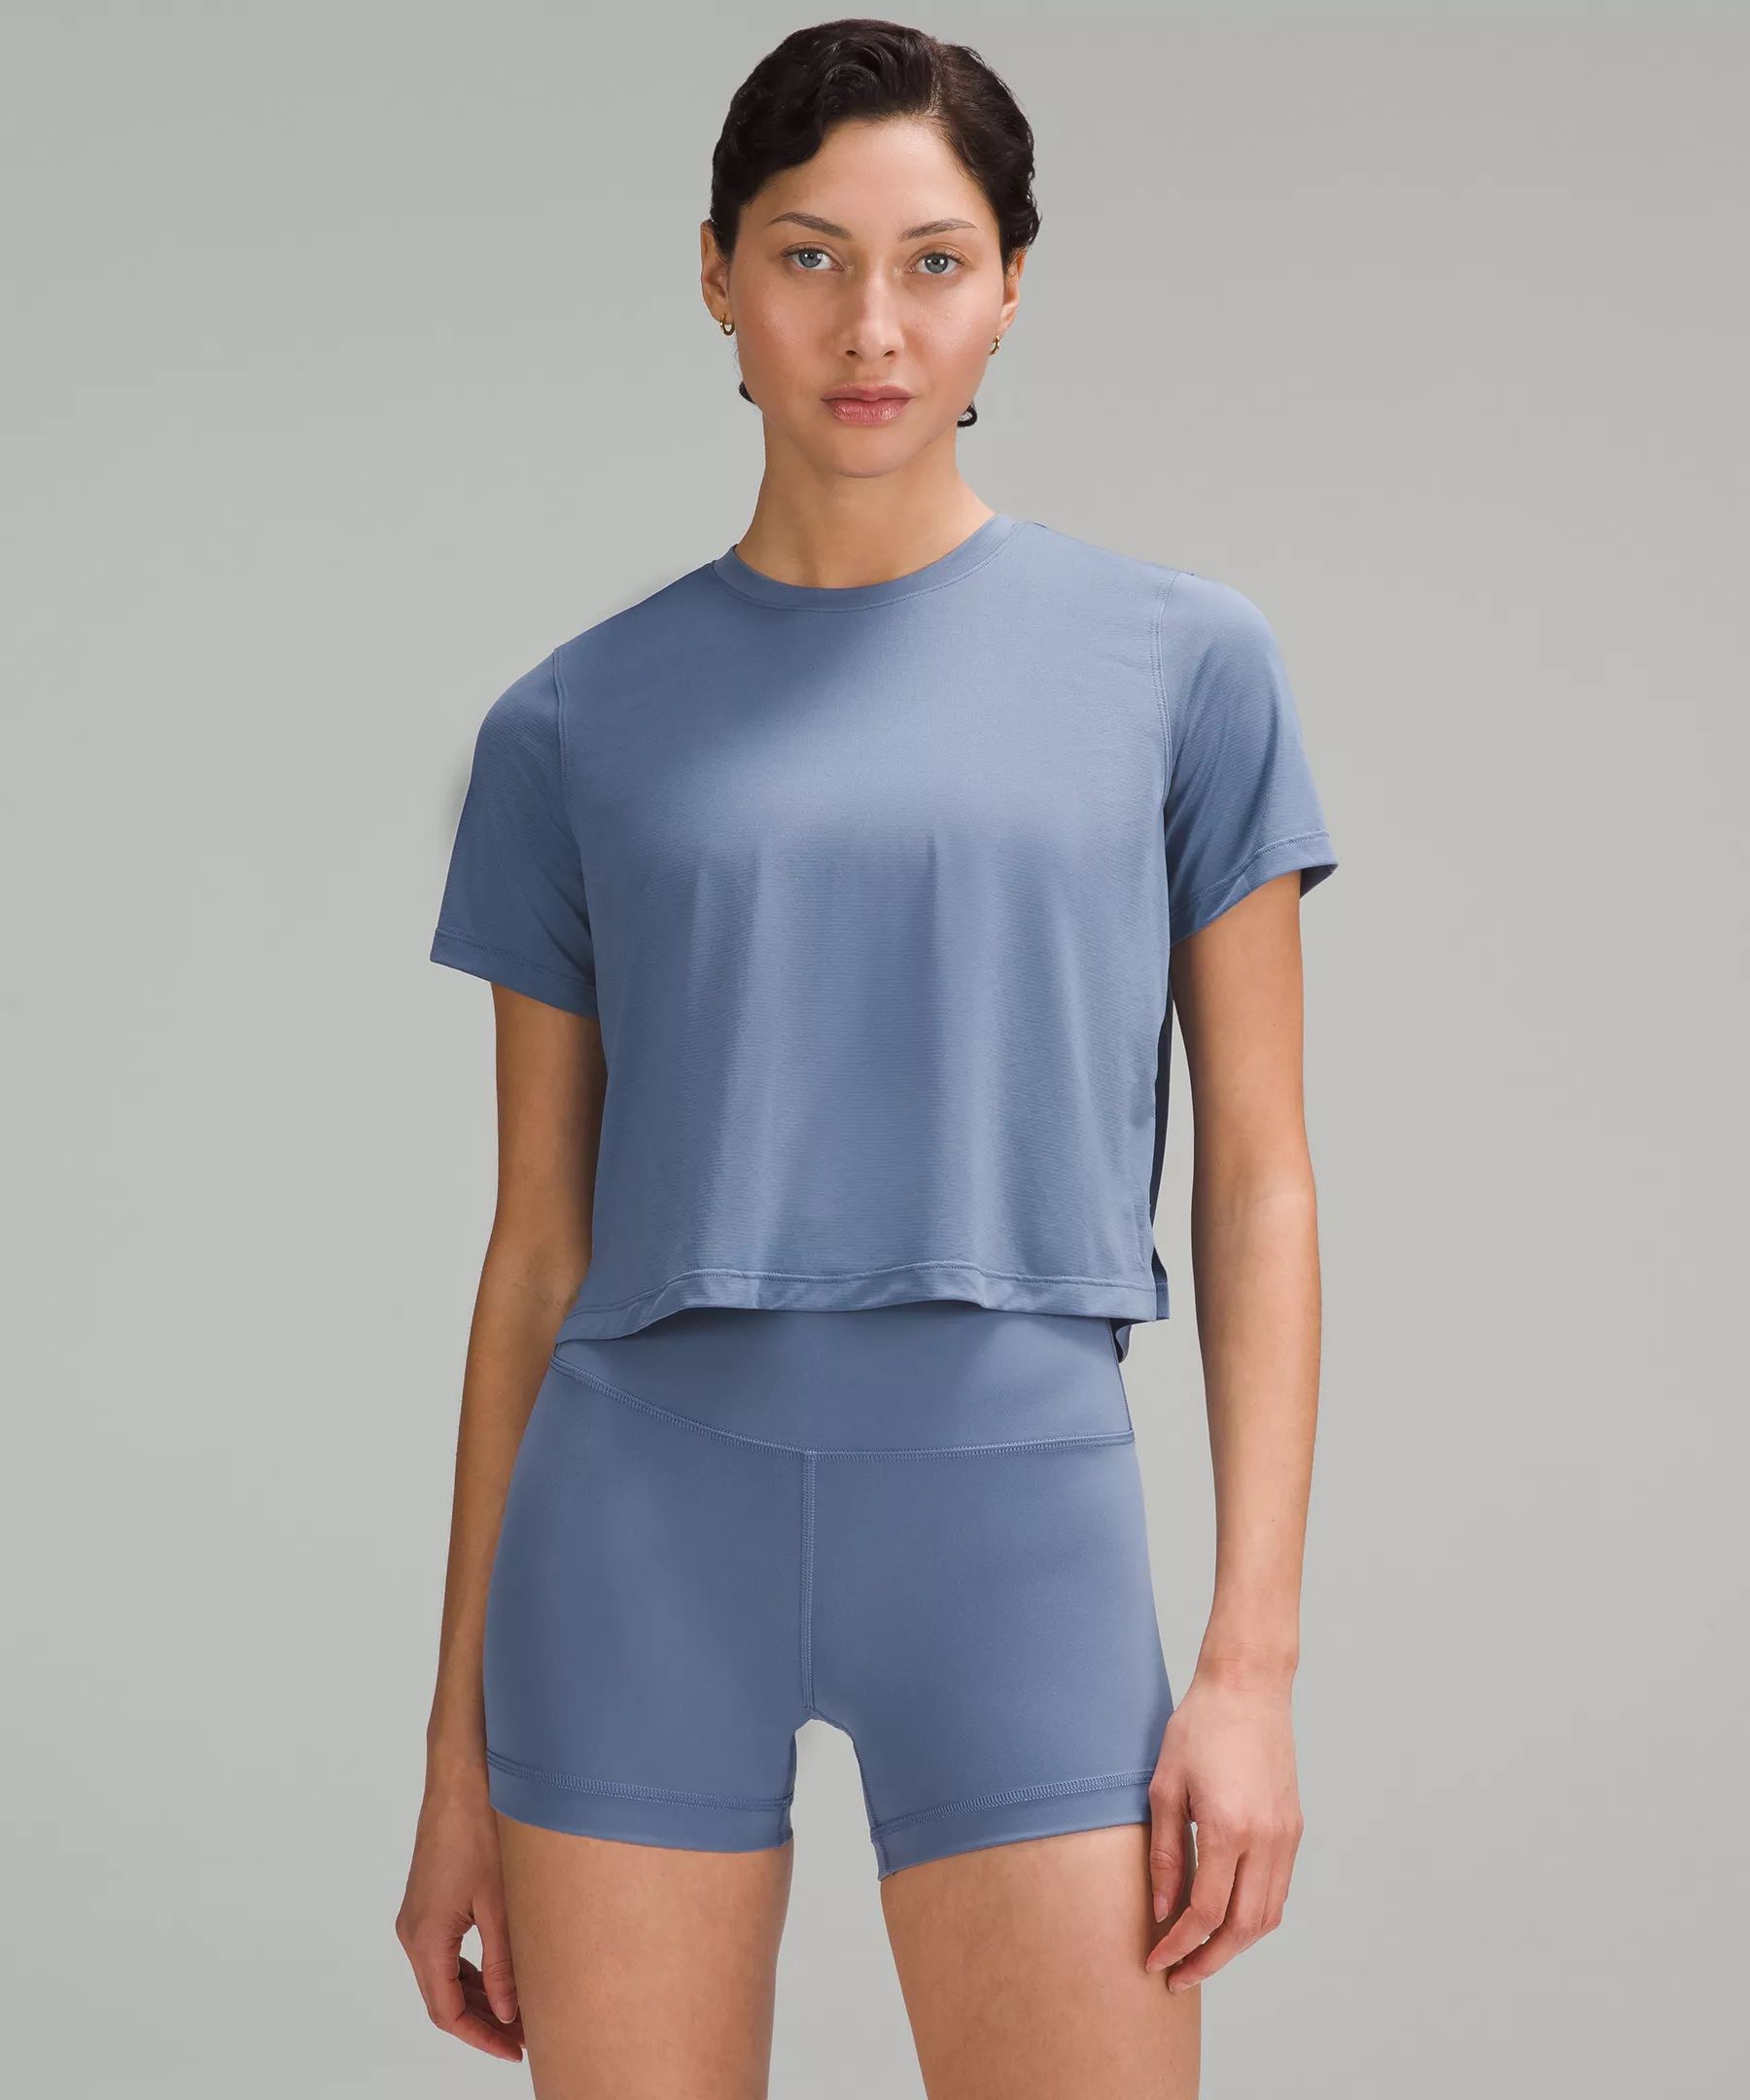 Ultralight Waist-Length T-Shirt | Lululemon (US)